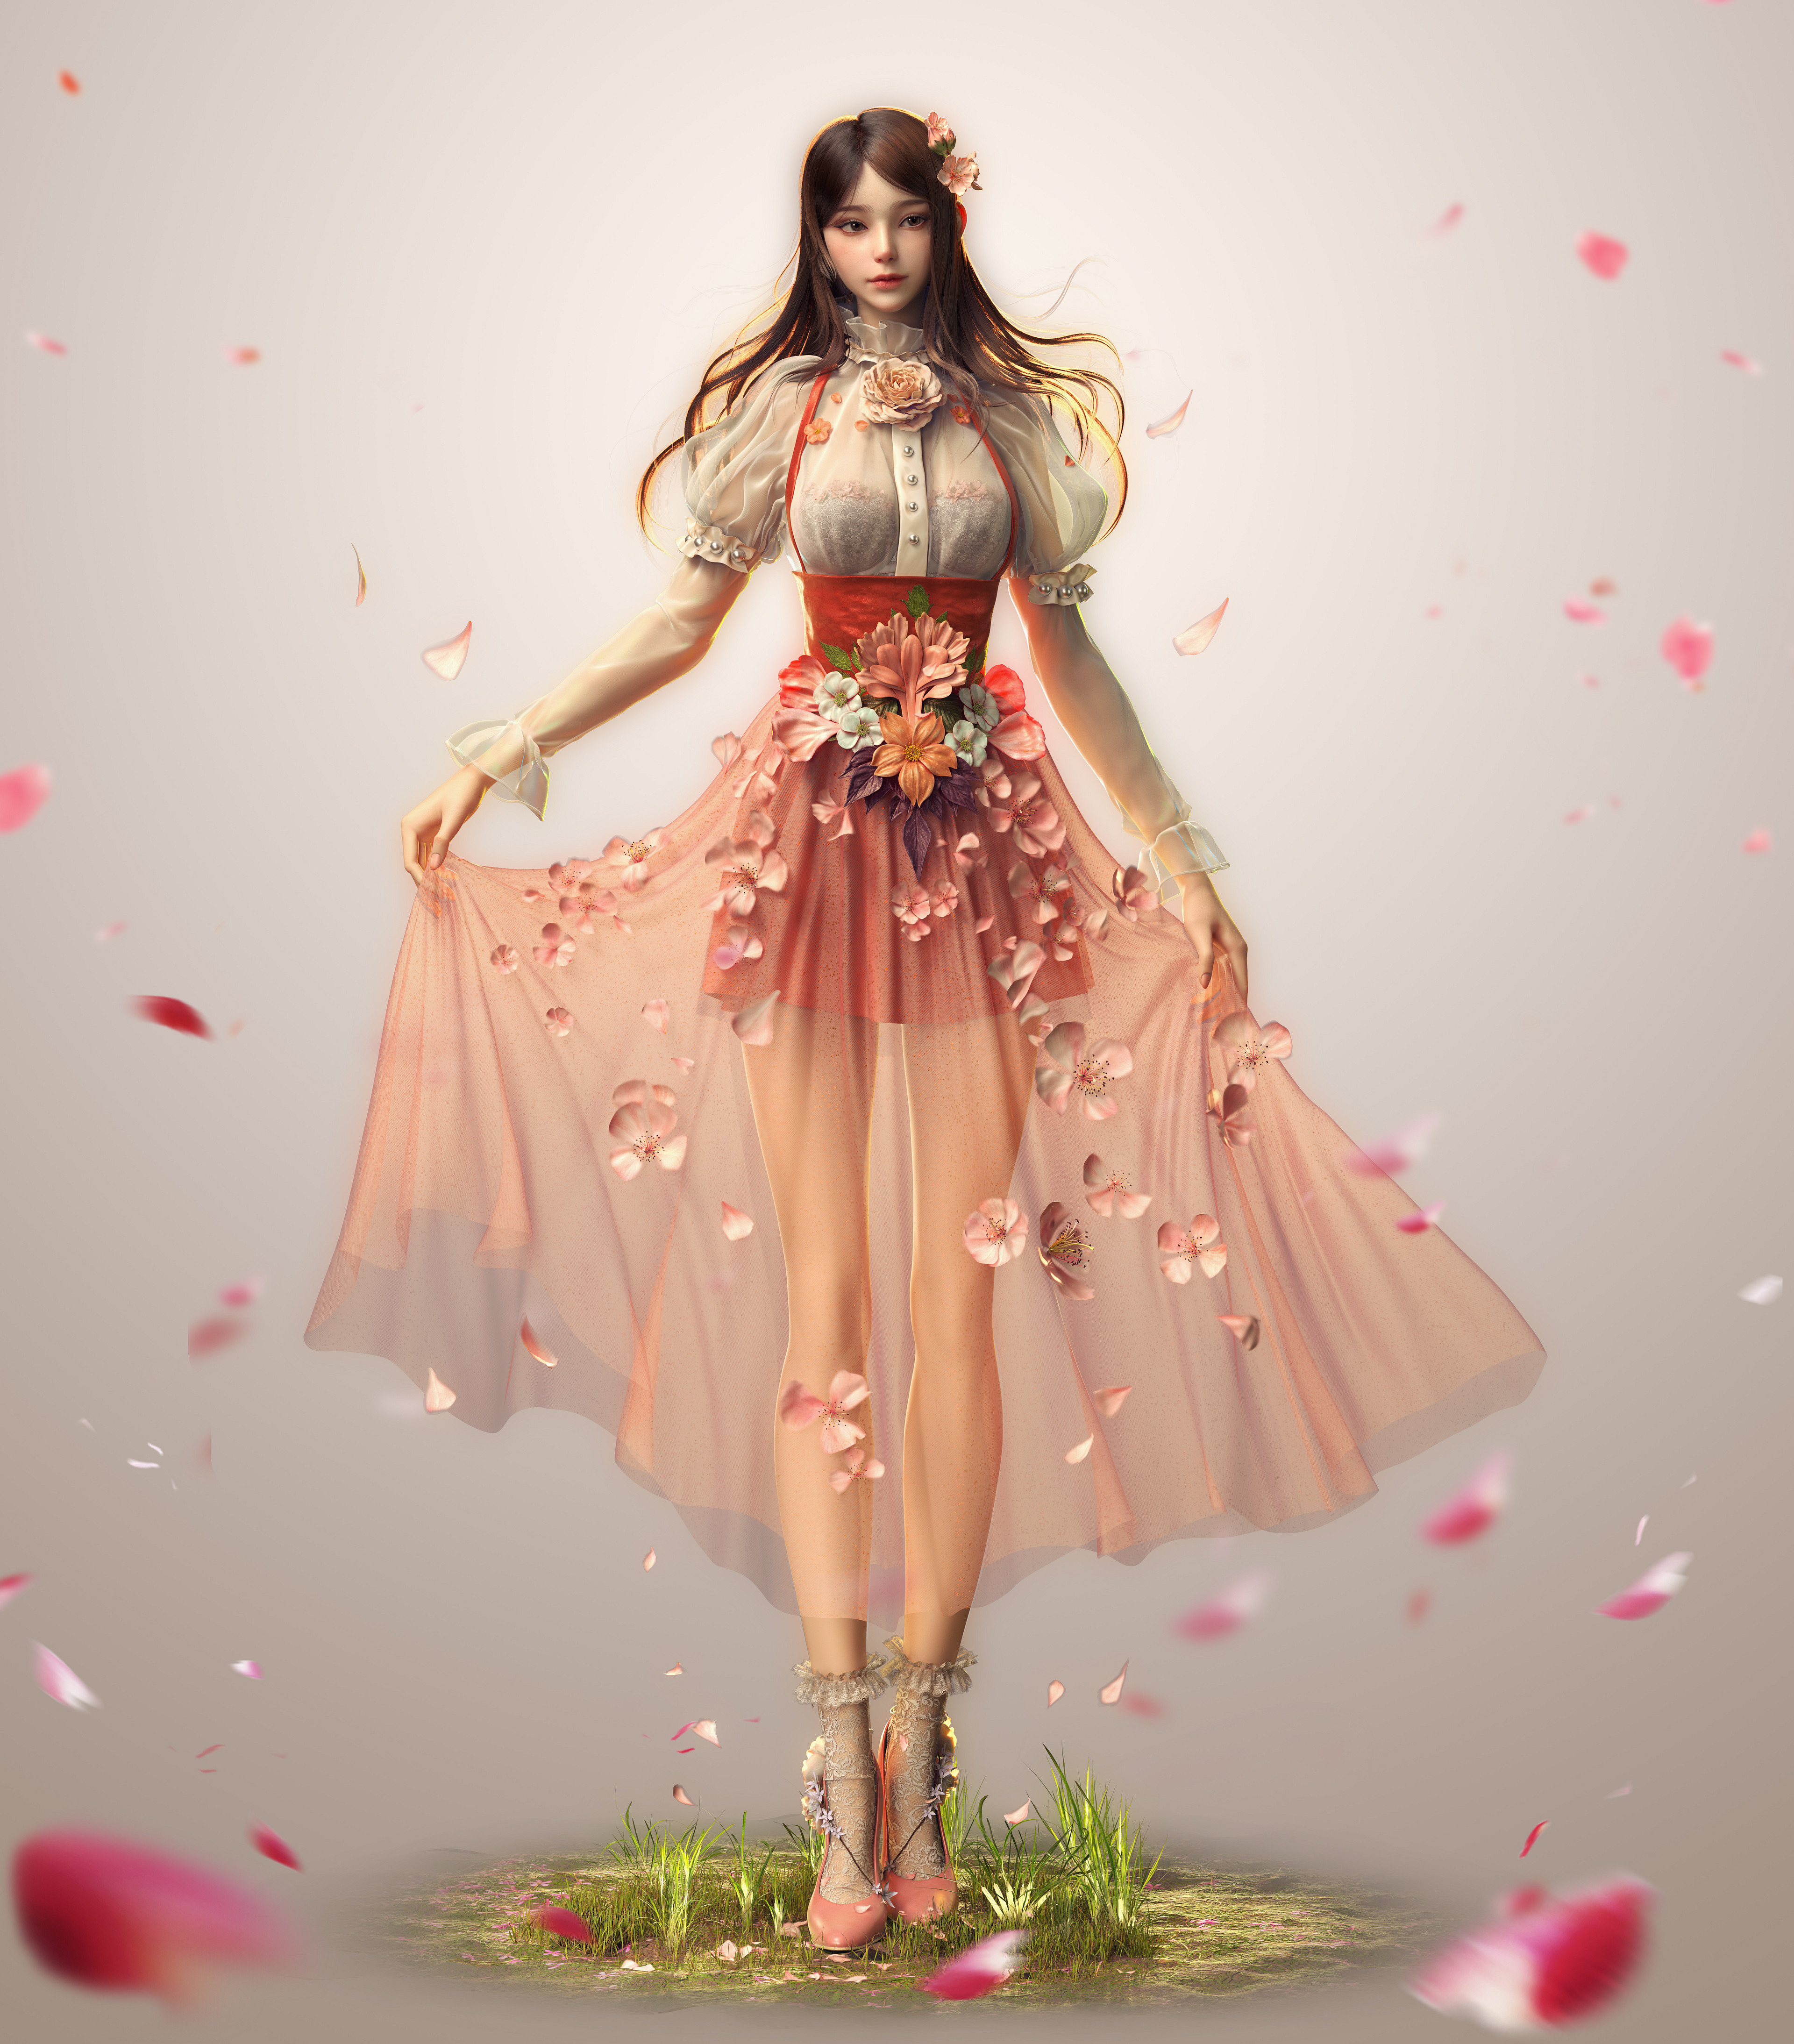 Yangzhengnan Cheng Artwork ArtStation Women Asian Fantasy Girl Digital Art Standing Brunette Fantasy 3840x4375